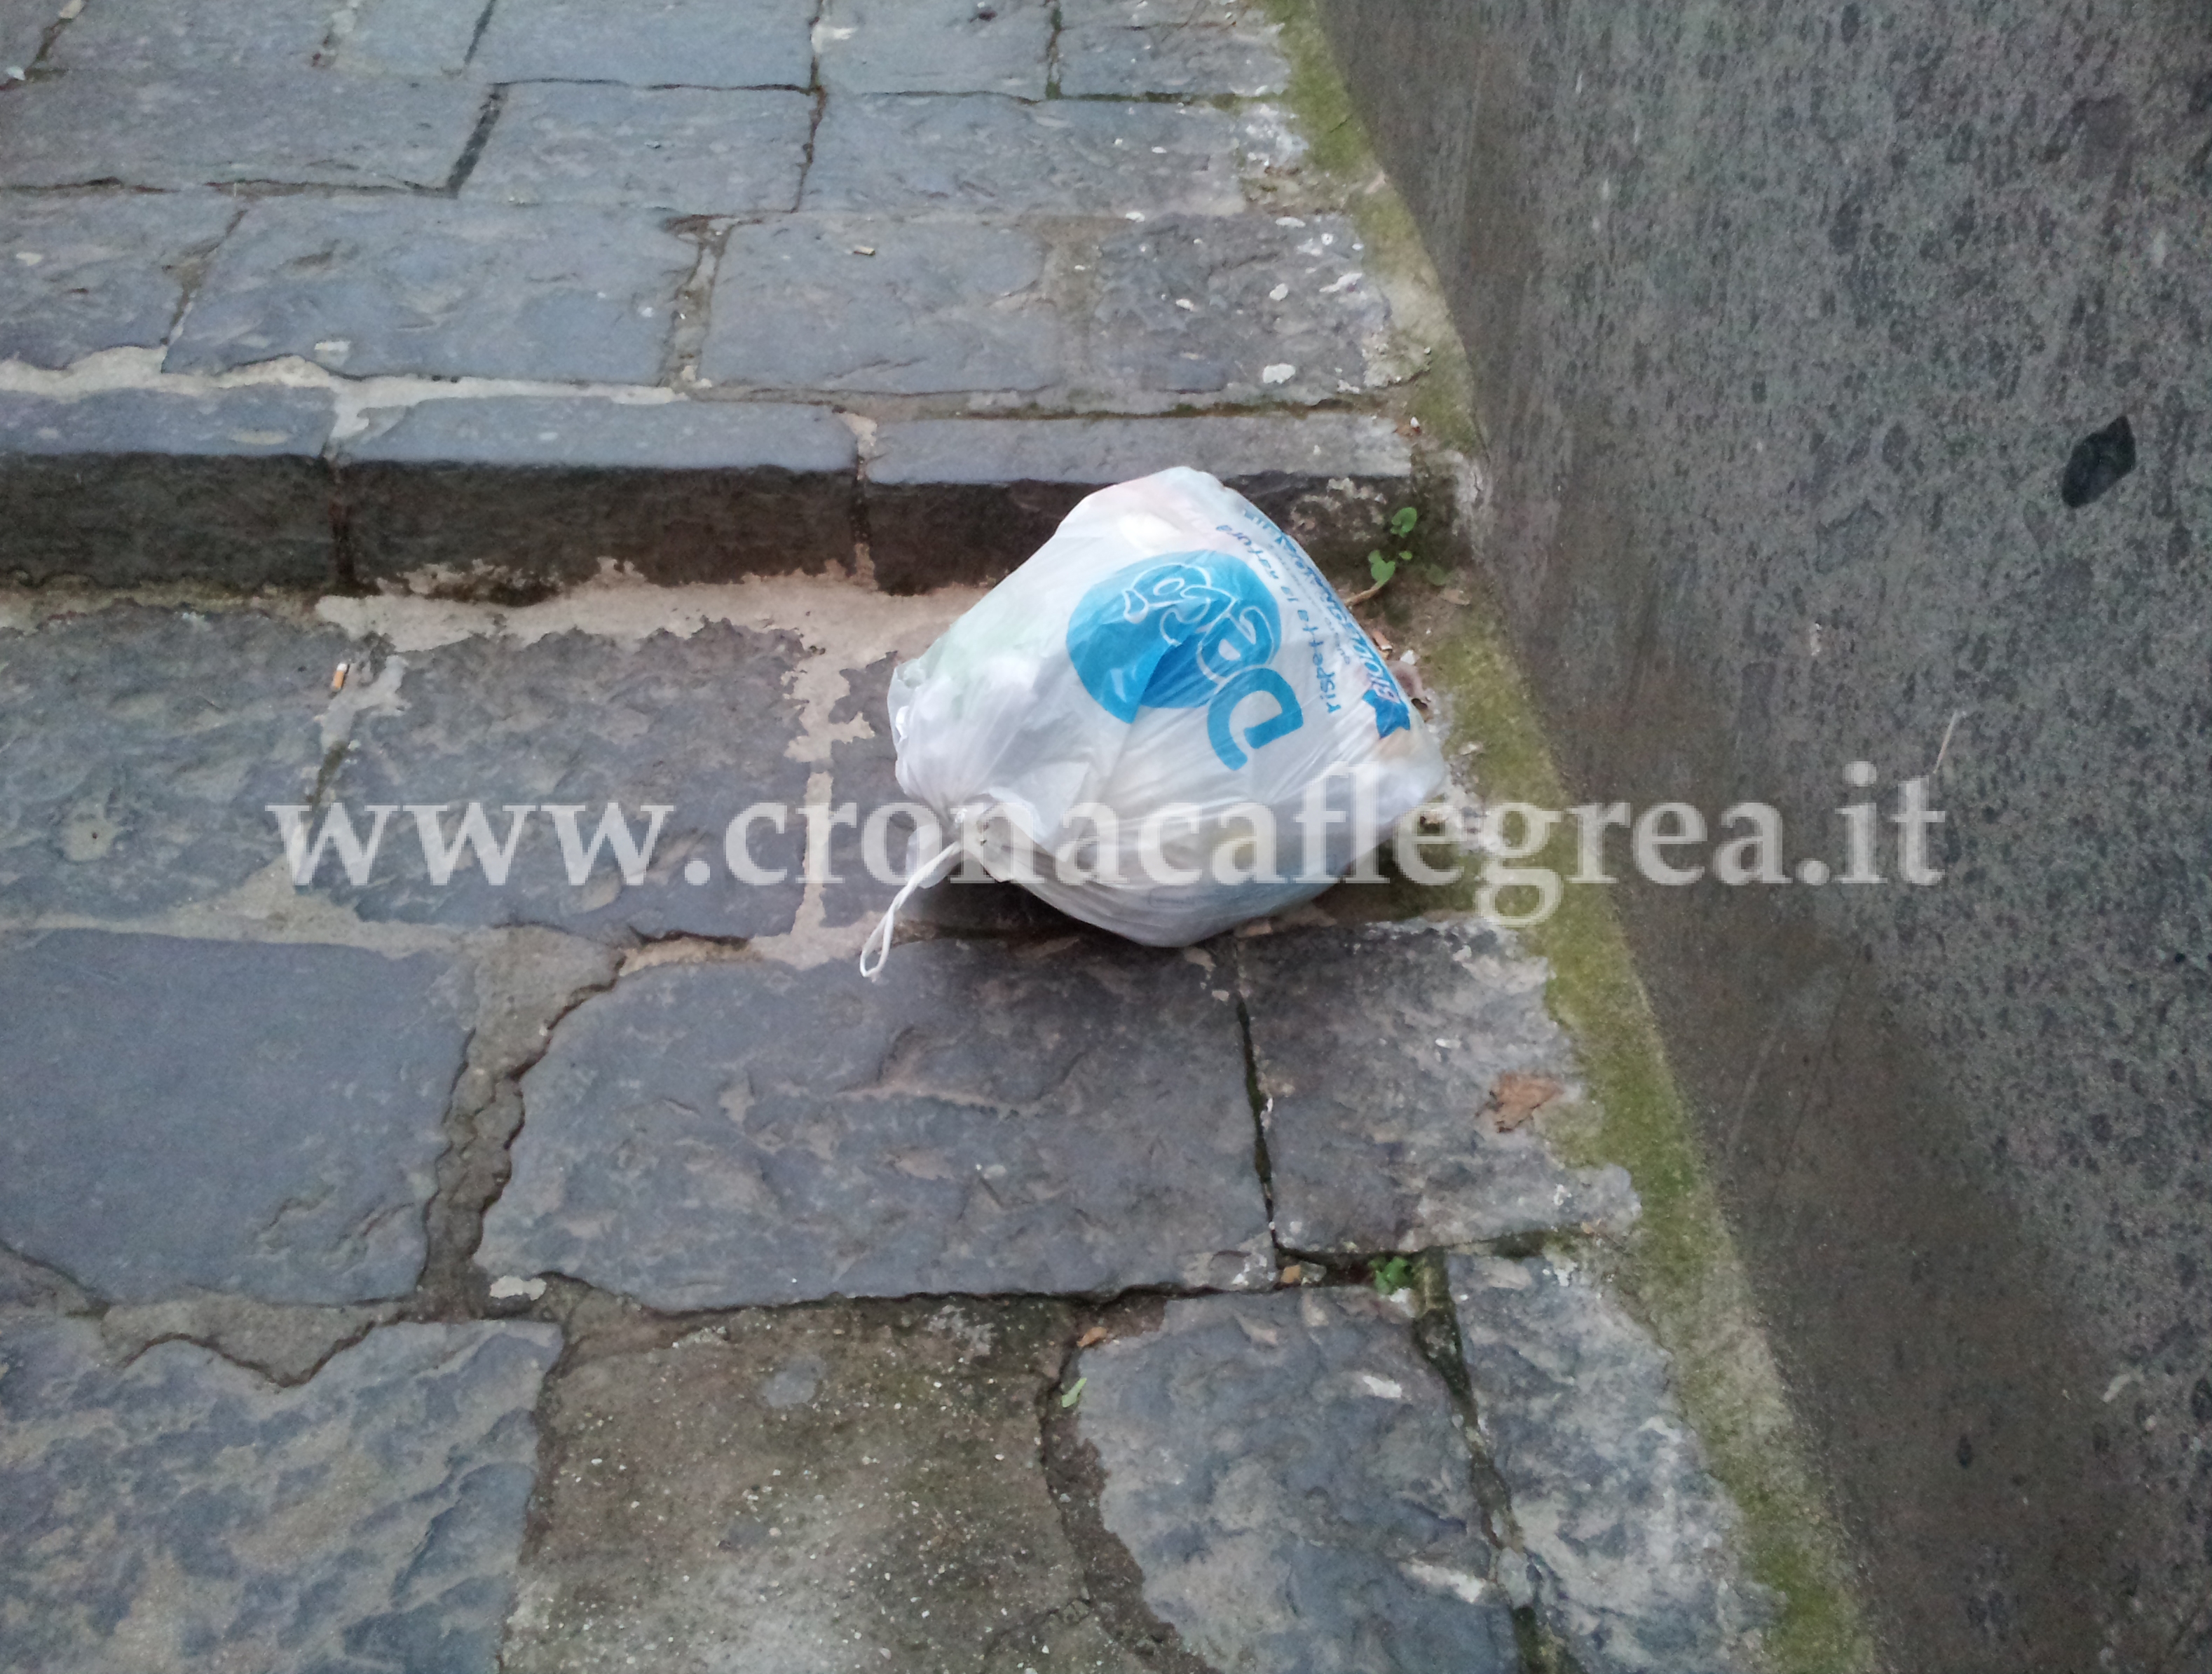 FOTONOTIZIA/ Via Napoli, nonostante il “porta a porta” i sacchetti continuano a volare in strada